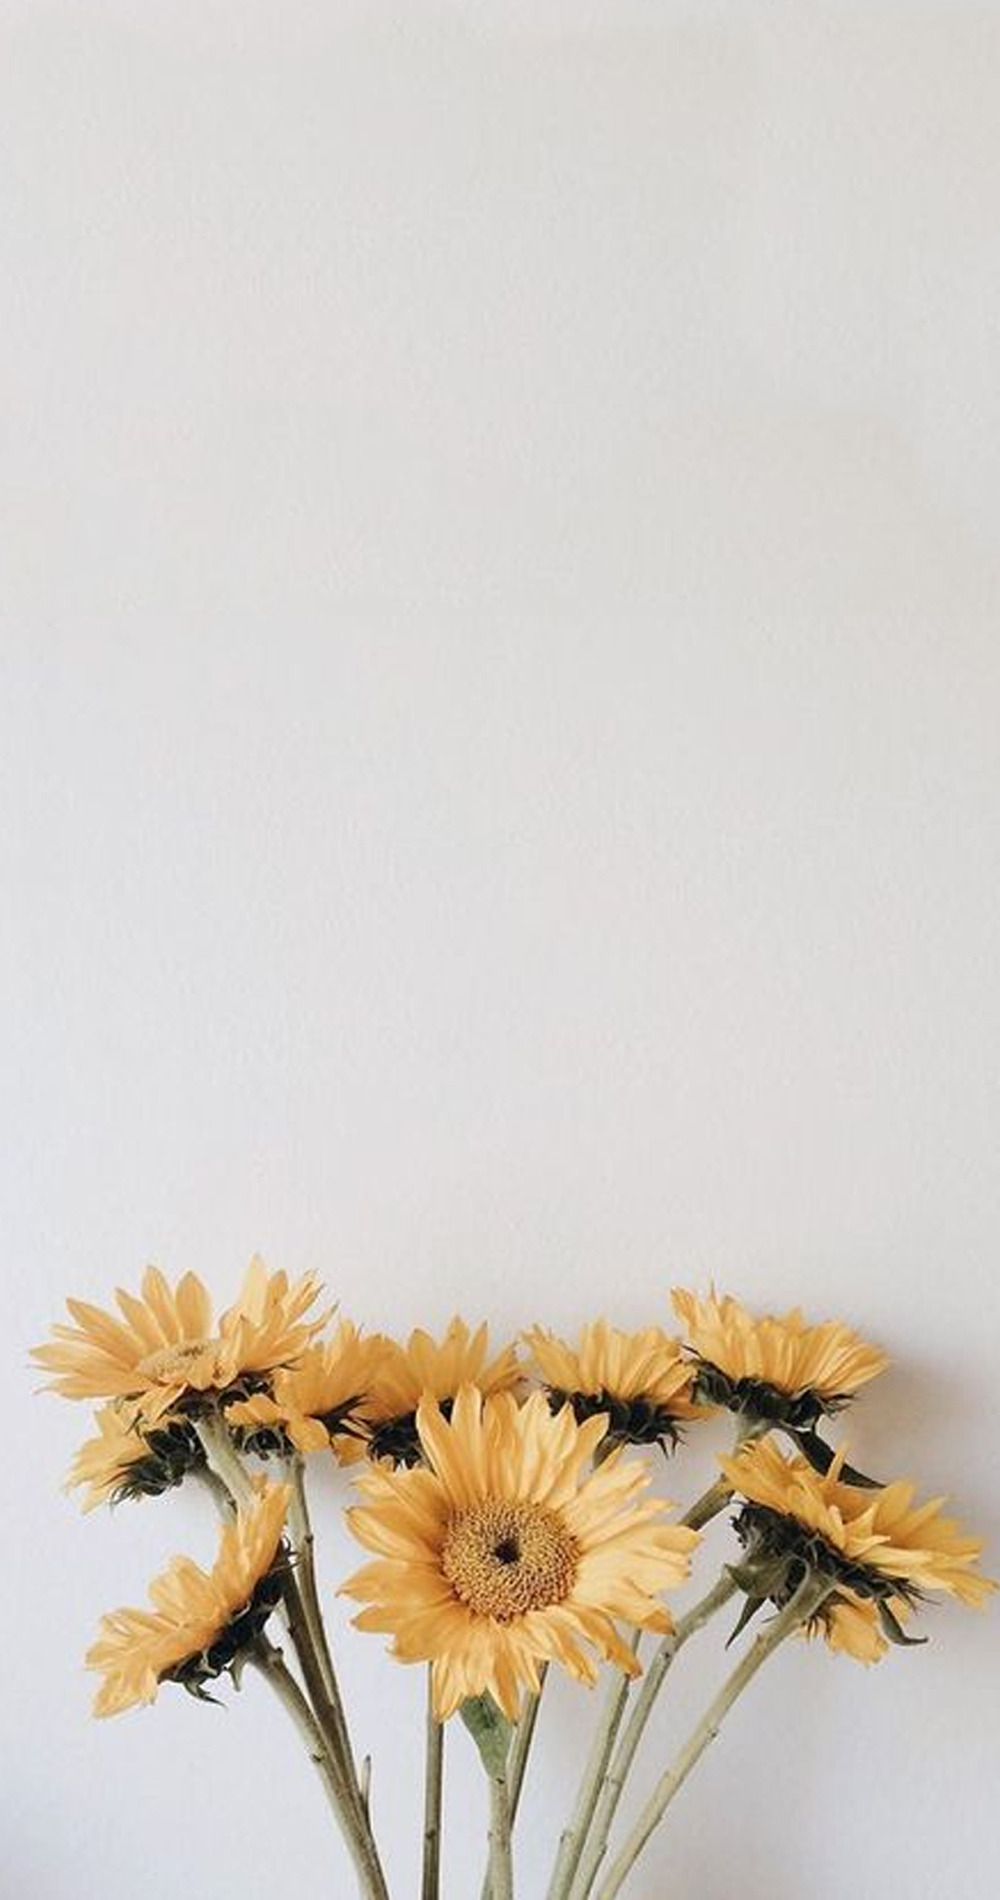 Tumblr Aesthetic Wallpaper - Sunflower - HD Wallpaper 